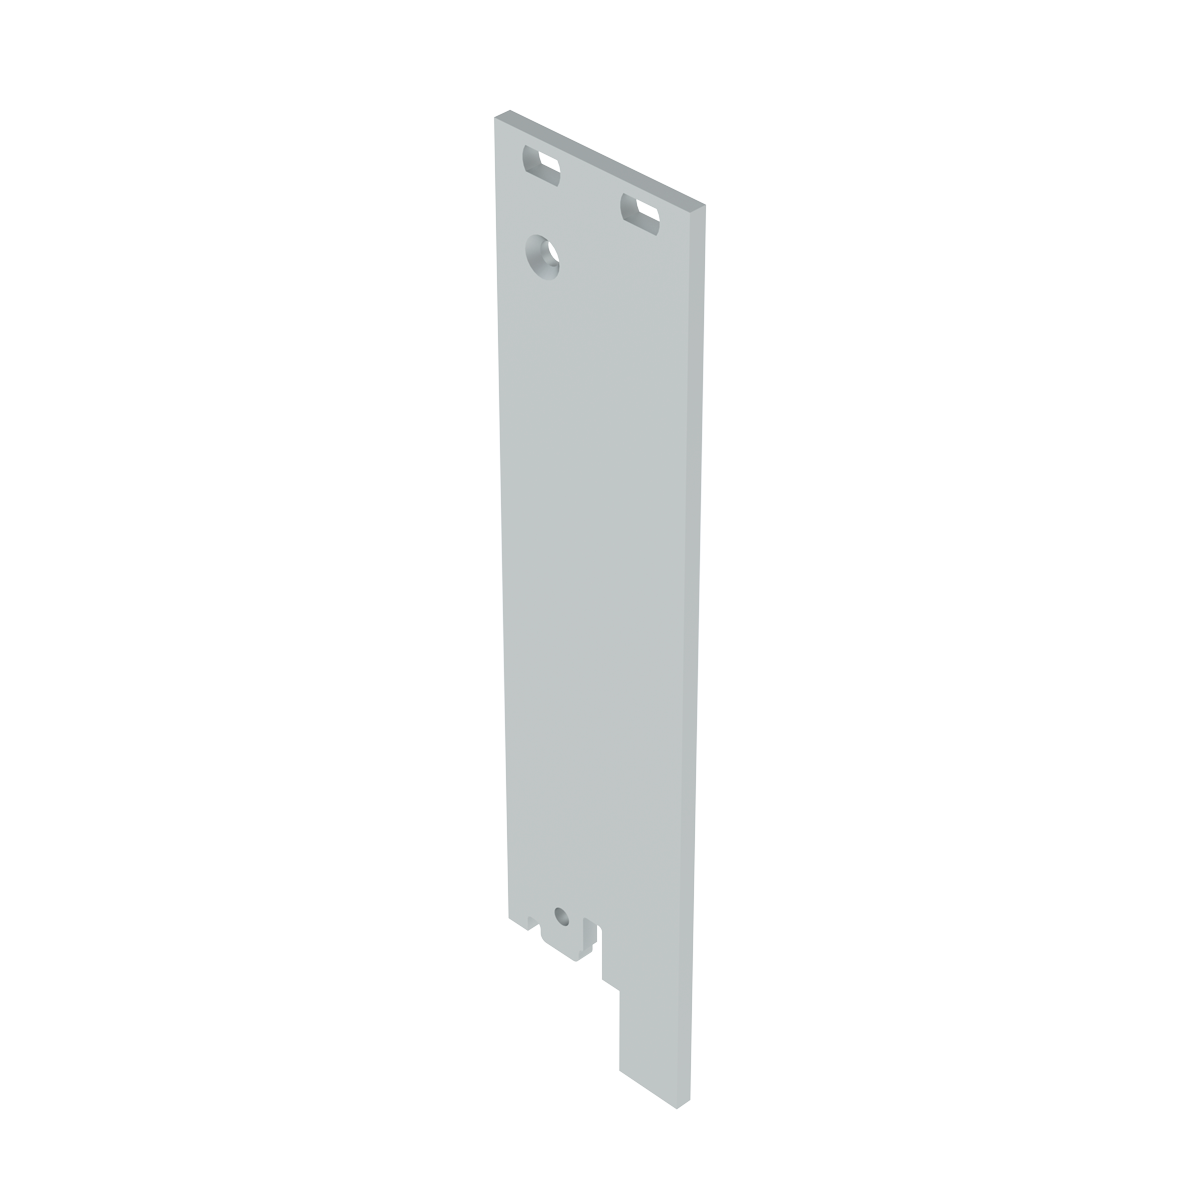 Лицевая панель 4U5HP под инжектор-экстрактор тип V-2/V-W низ